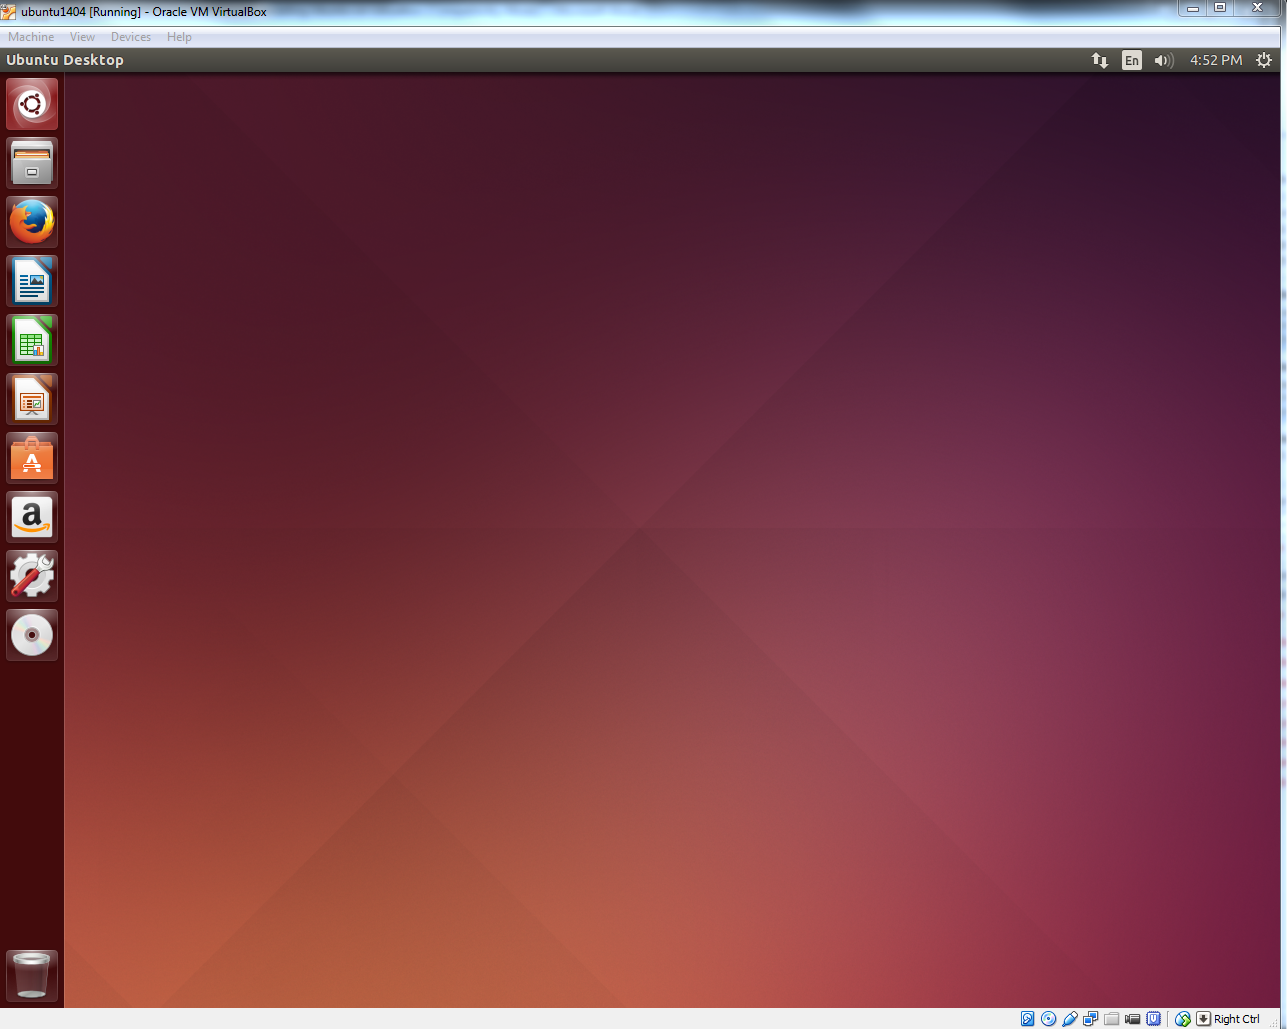 Normal Ubuntu desktop